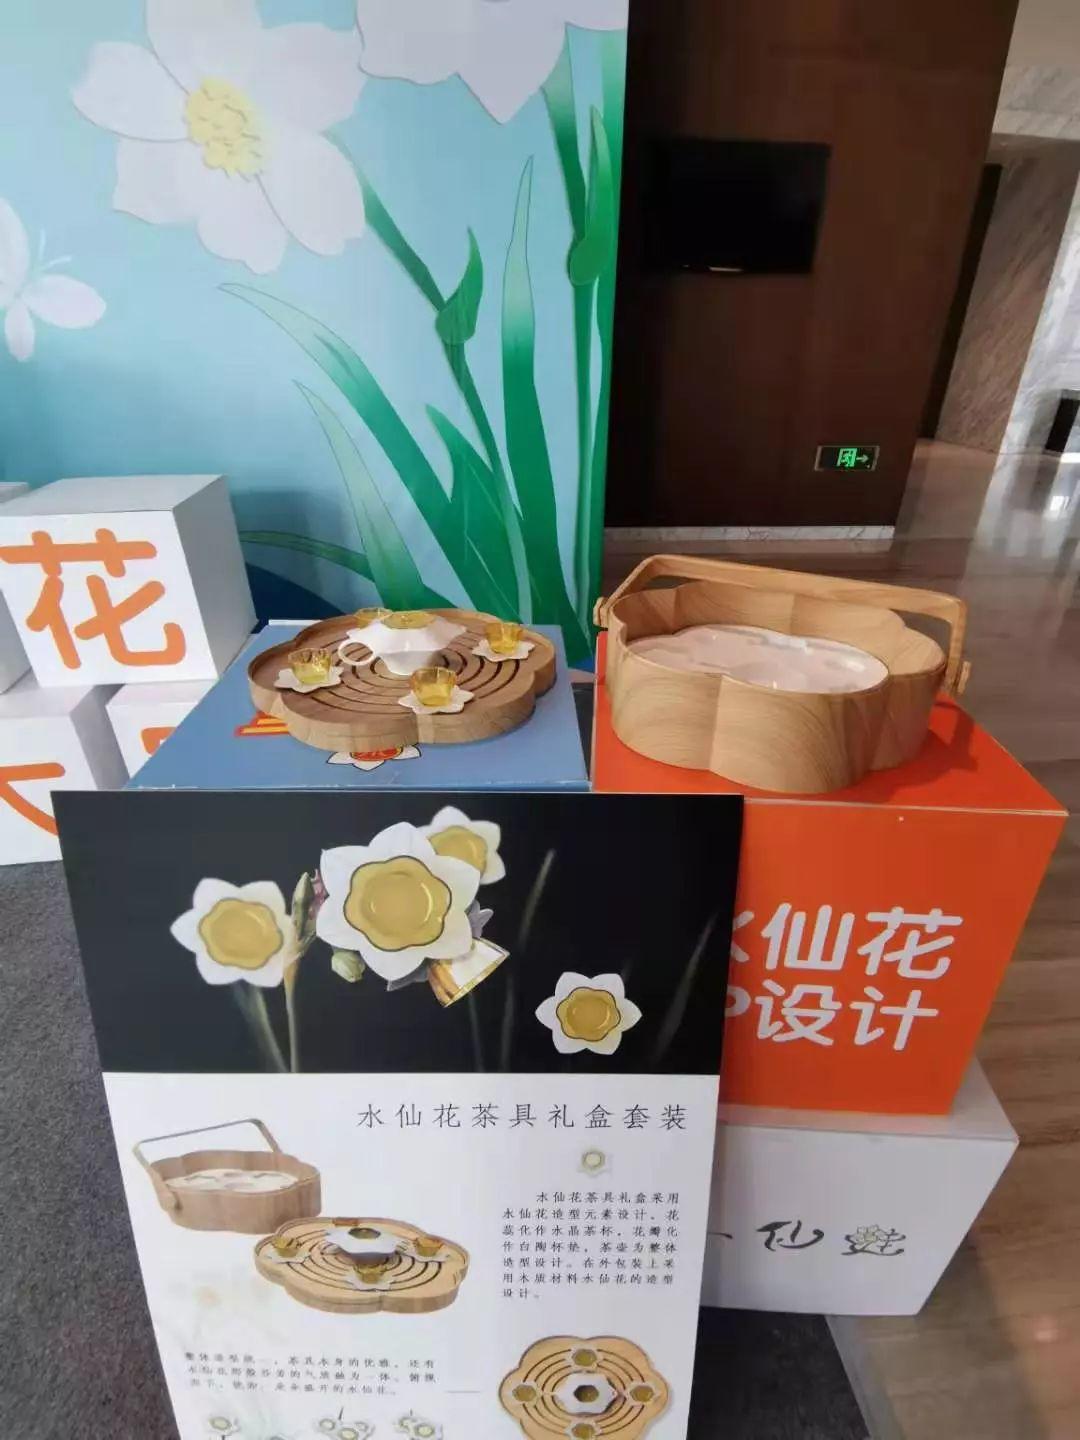 赛事 | 2019漳州水仙花创意设计大赛颁奖仪式